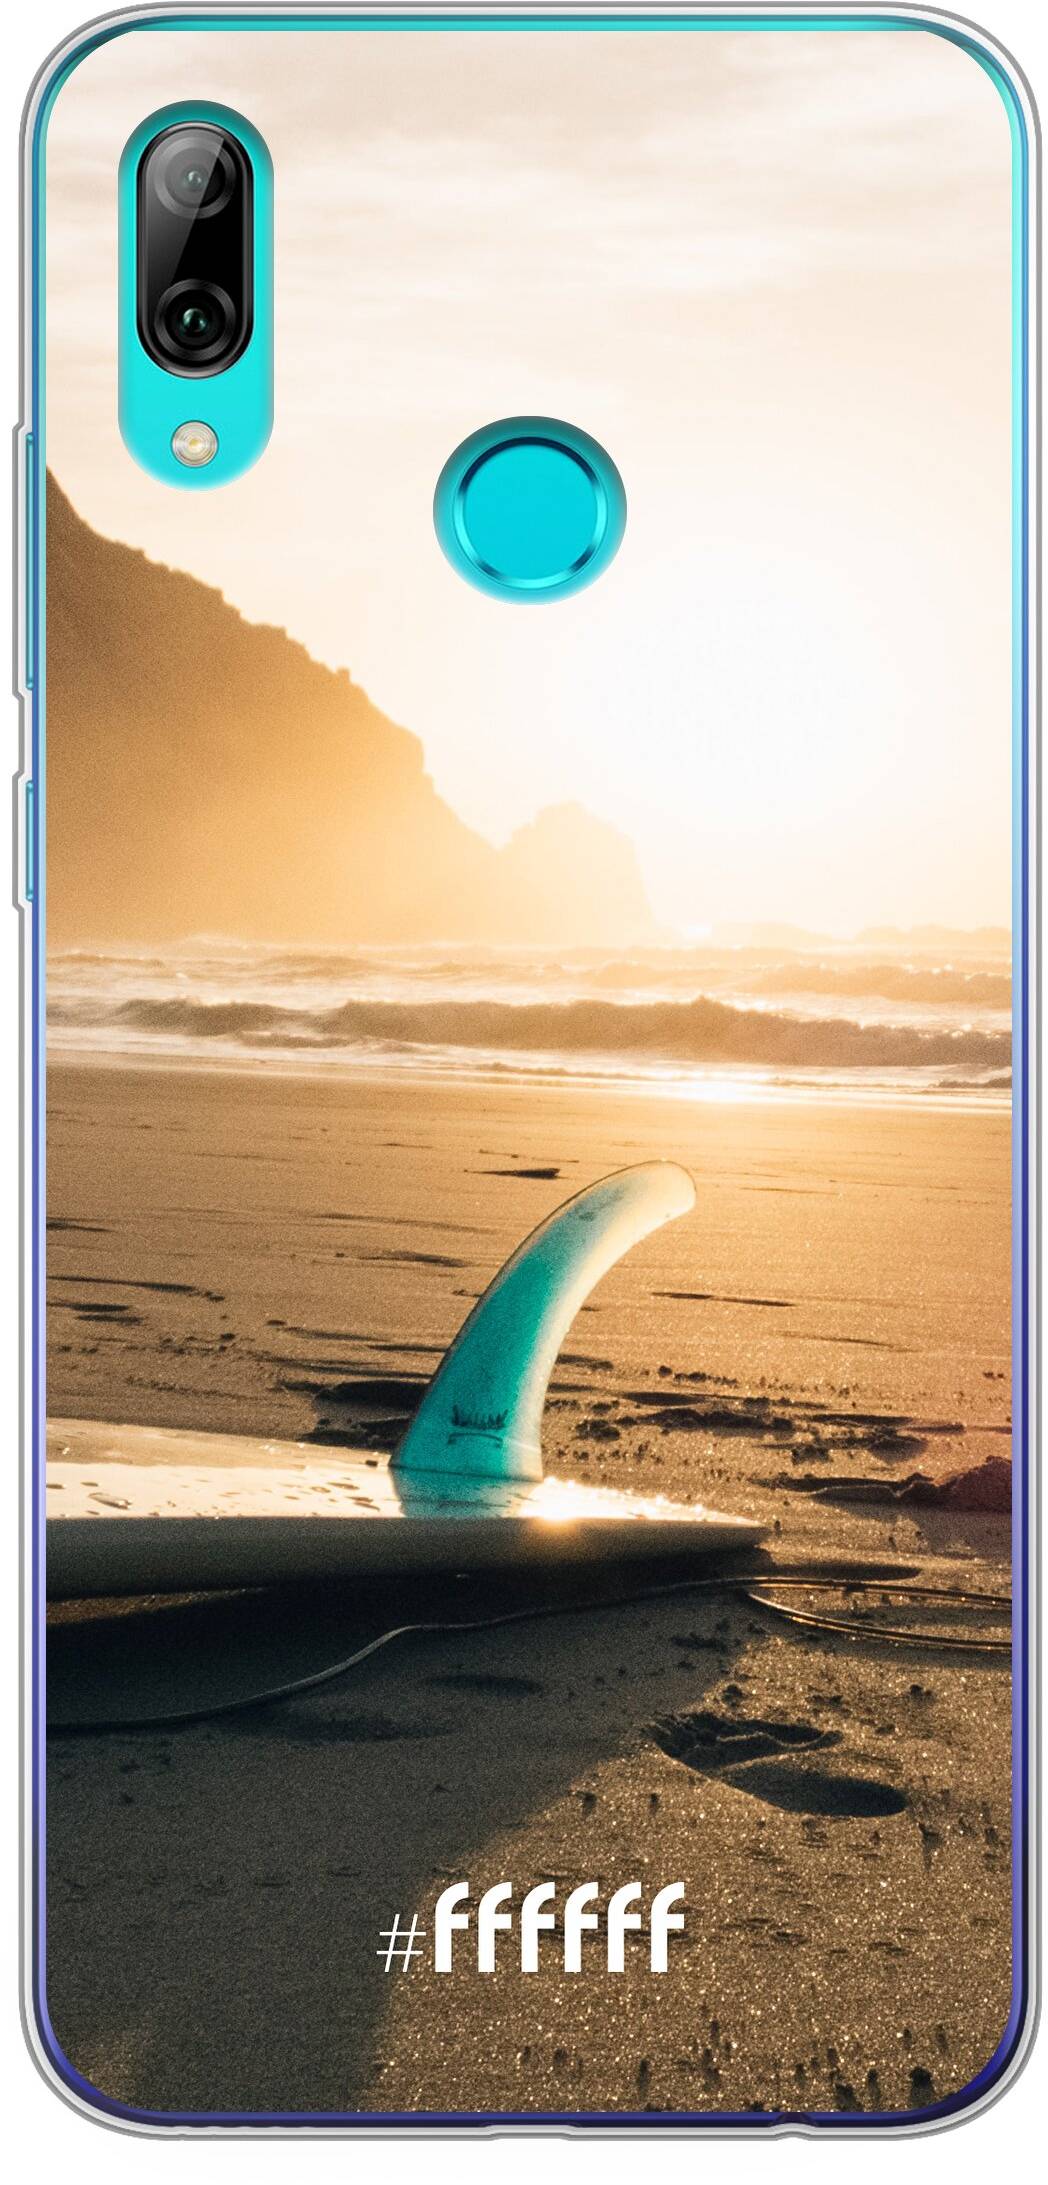 Sunset Surf P Smart (2019)